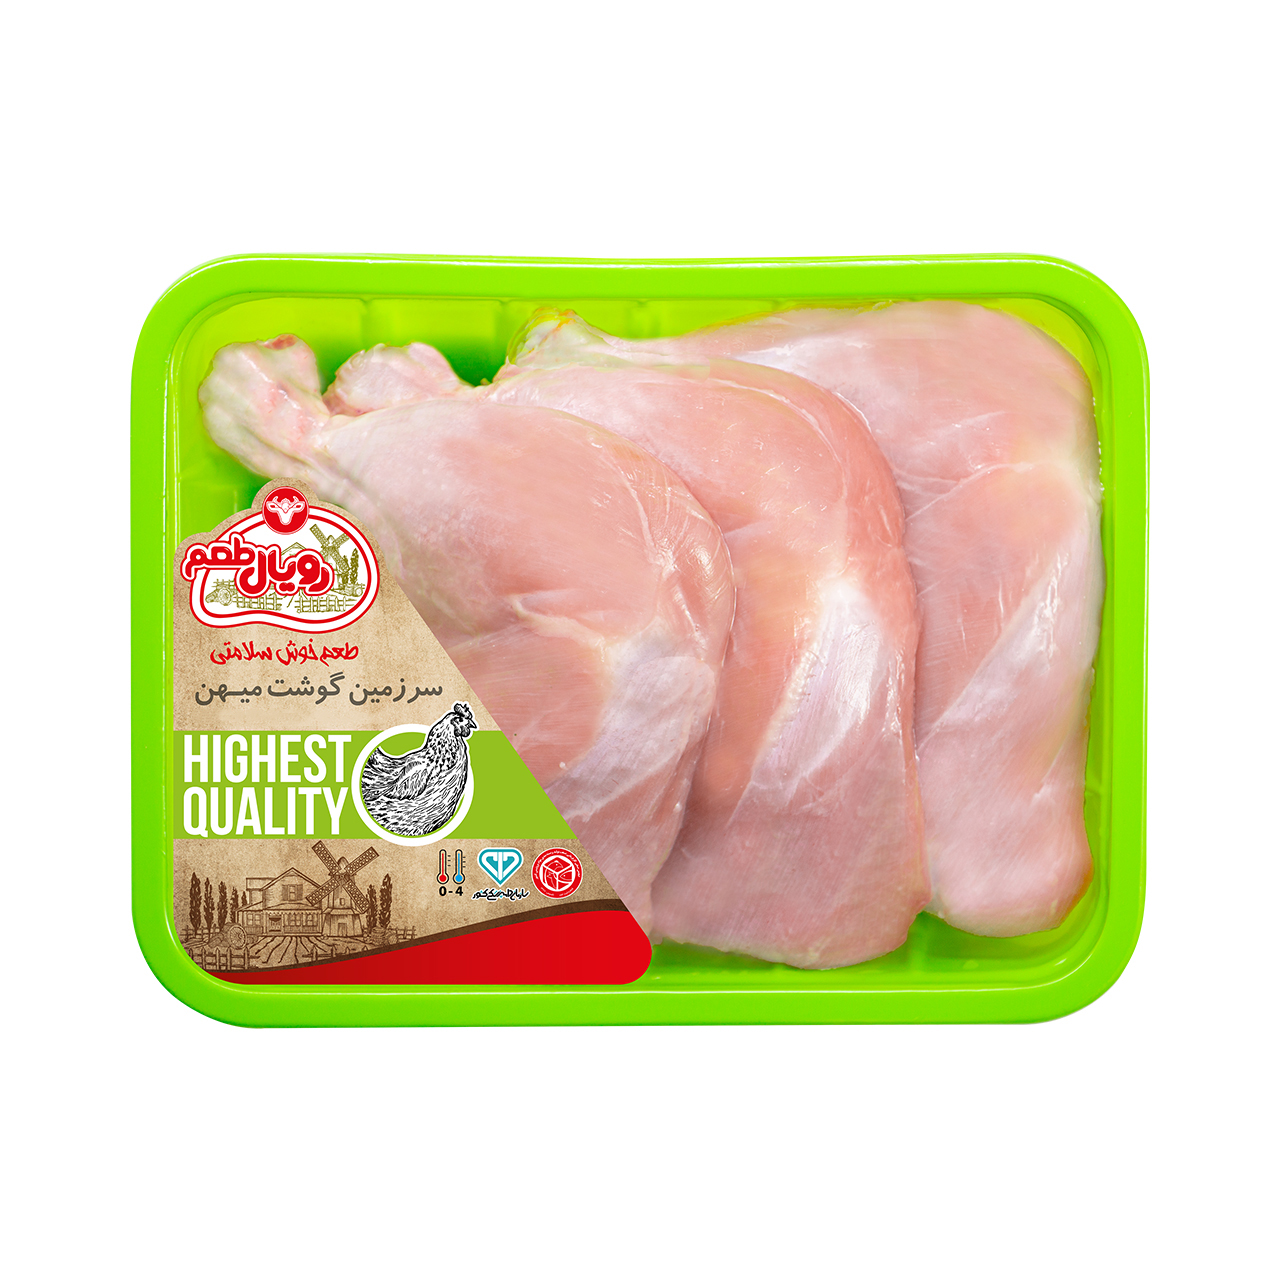 ران مرغ بدون پوست رويال طعم - 900 گرم